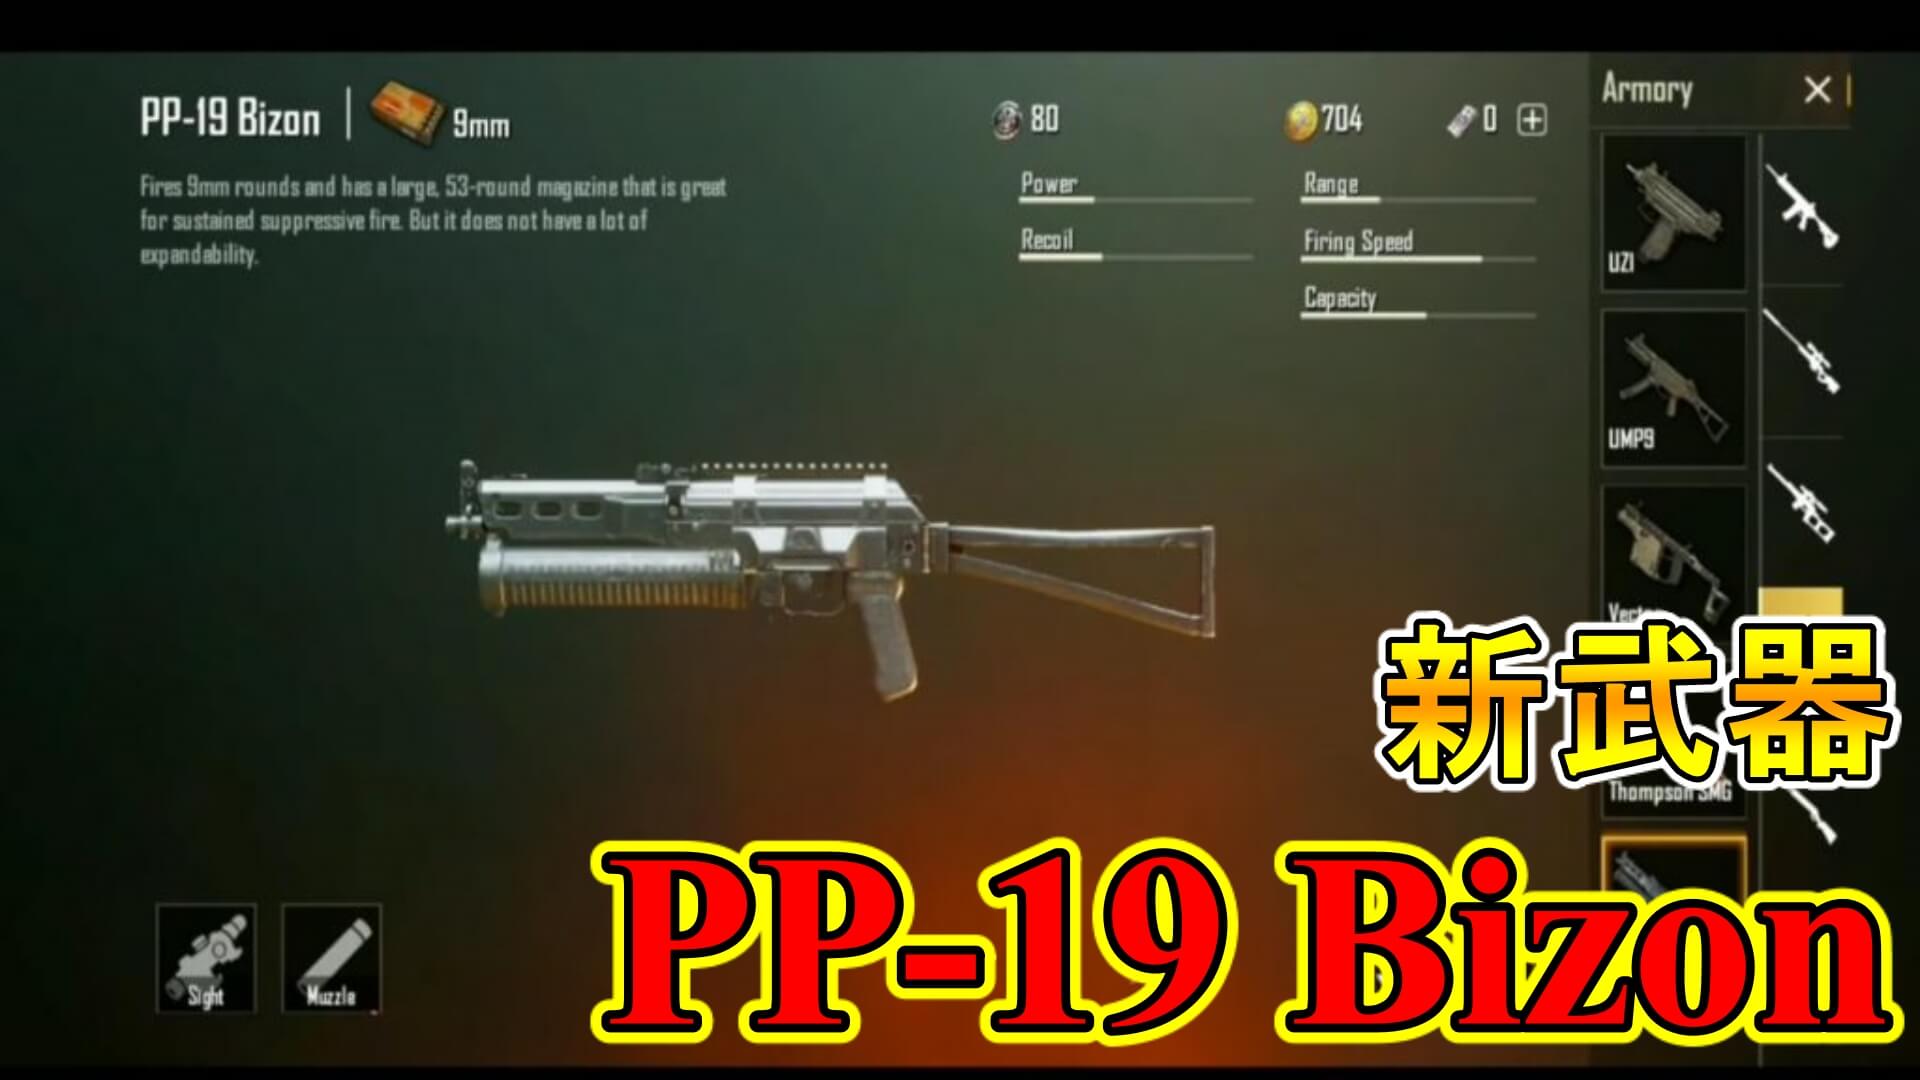 ｐｕｂｇモバイル Pp 19bizon 新武器サブマシンガンの性能や詳細を解説 ゲーム大好き人間の秘密基地